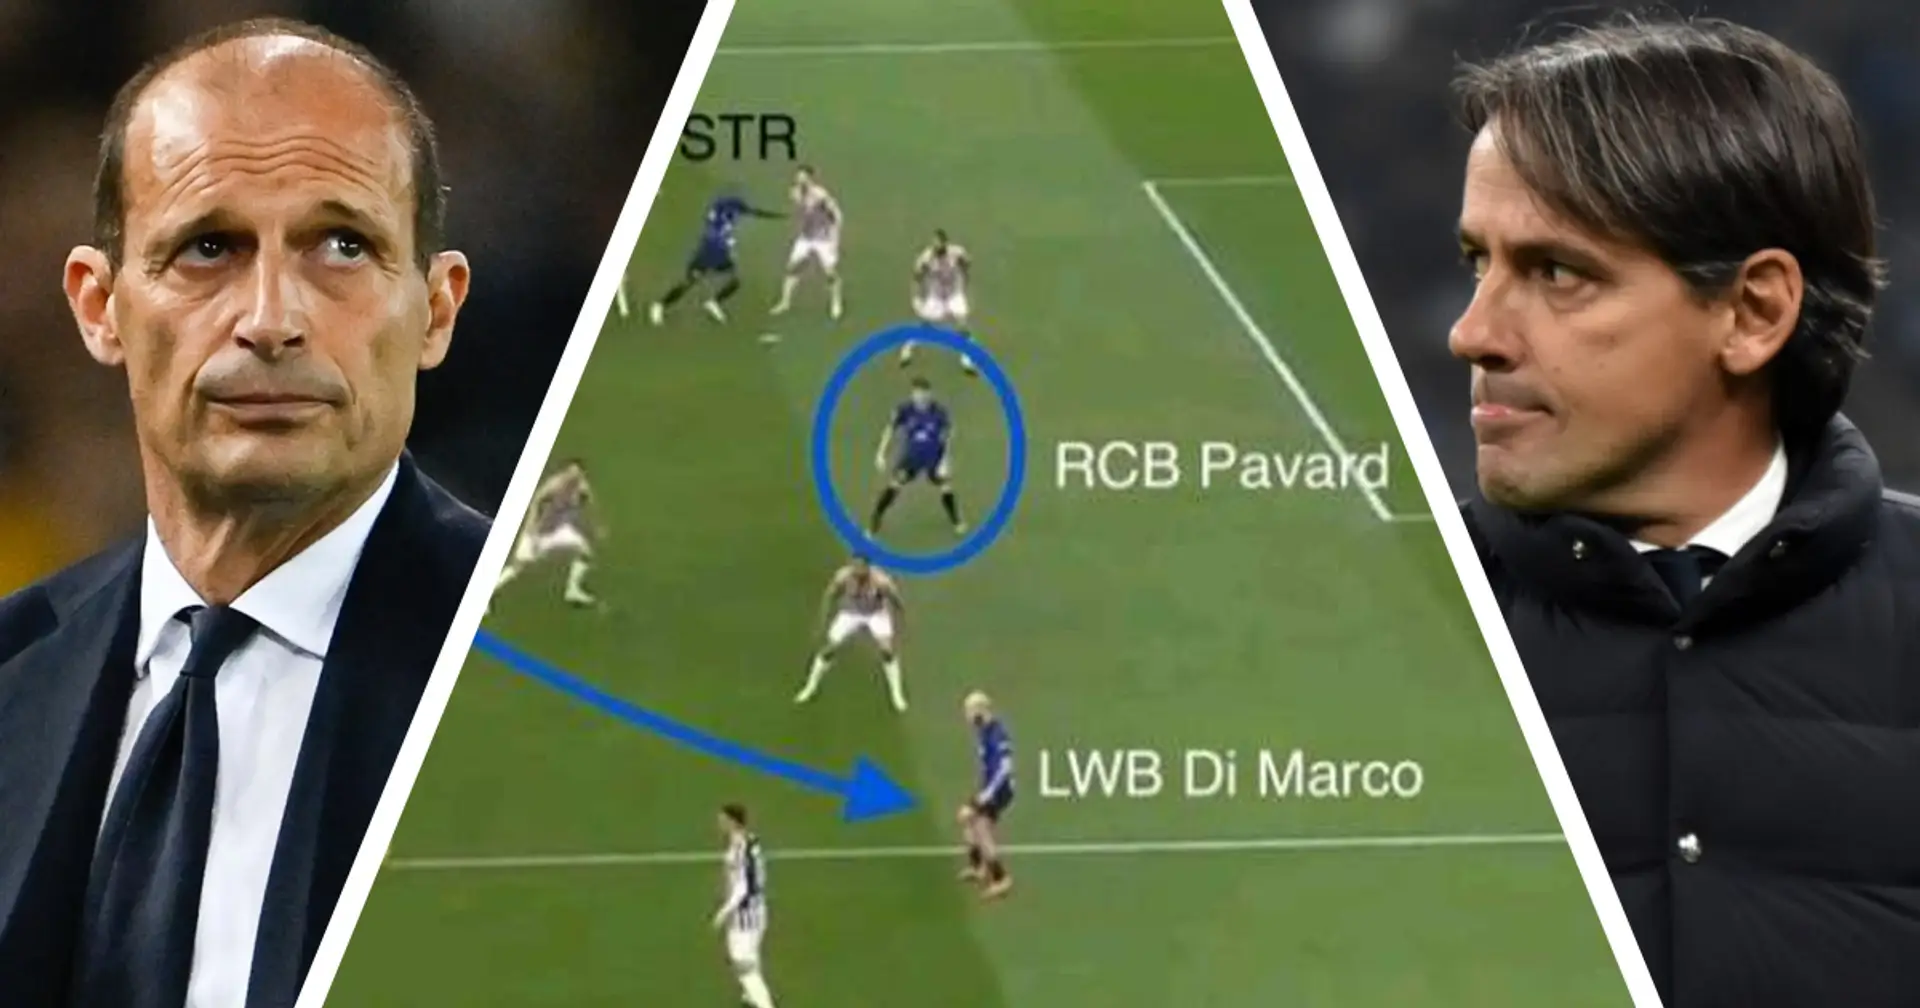 La vittoria dell'Inter con la Juve nasce dal gioco 'fluido': così Inzaghi ha dato una lezione ad Allegri